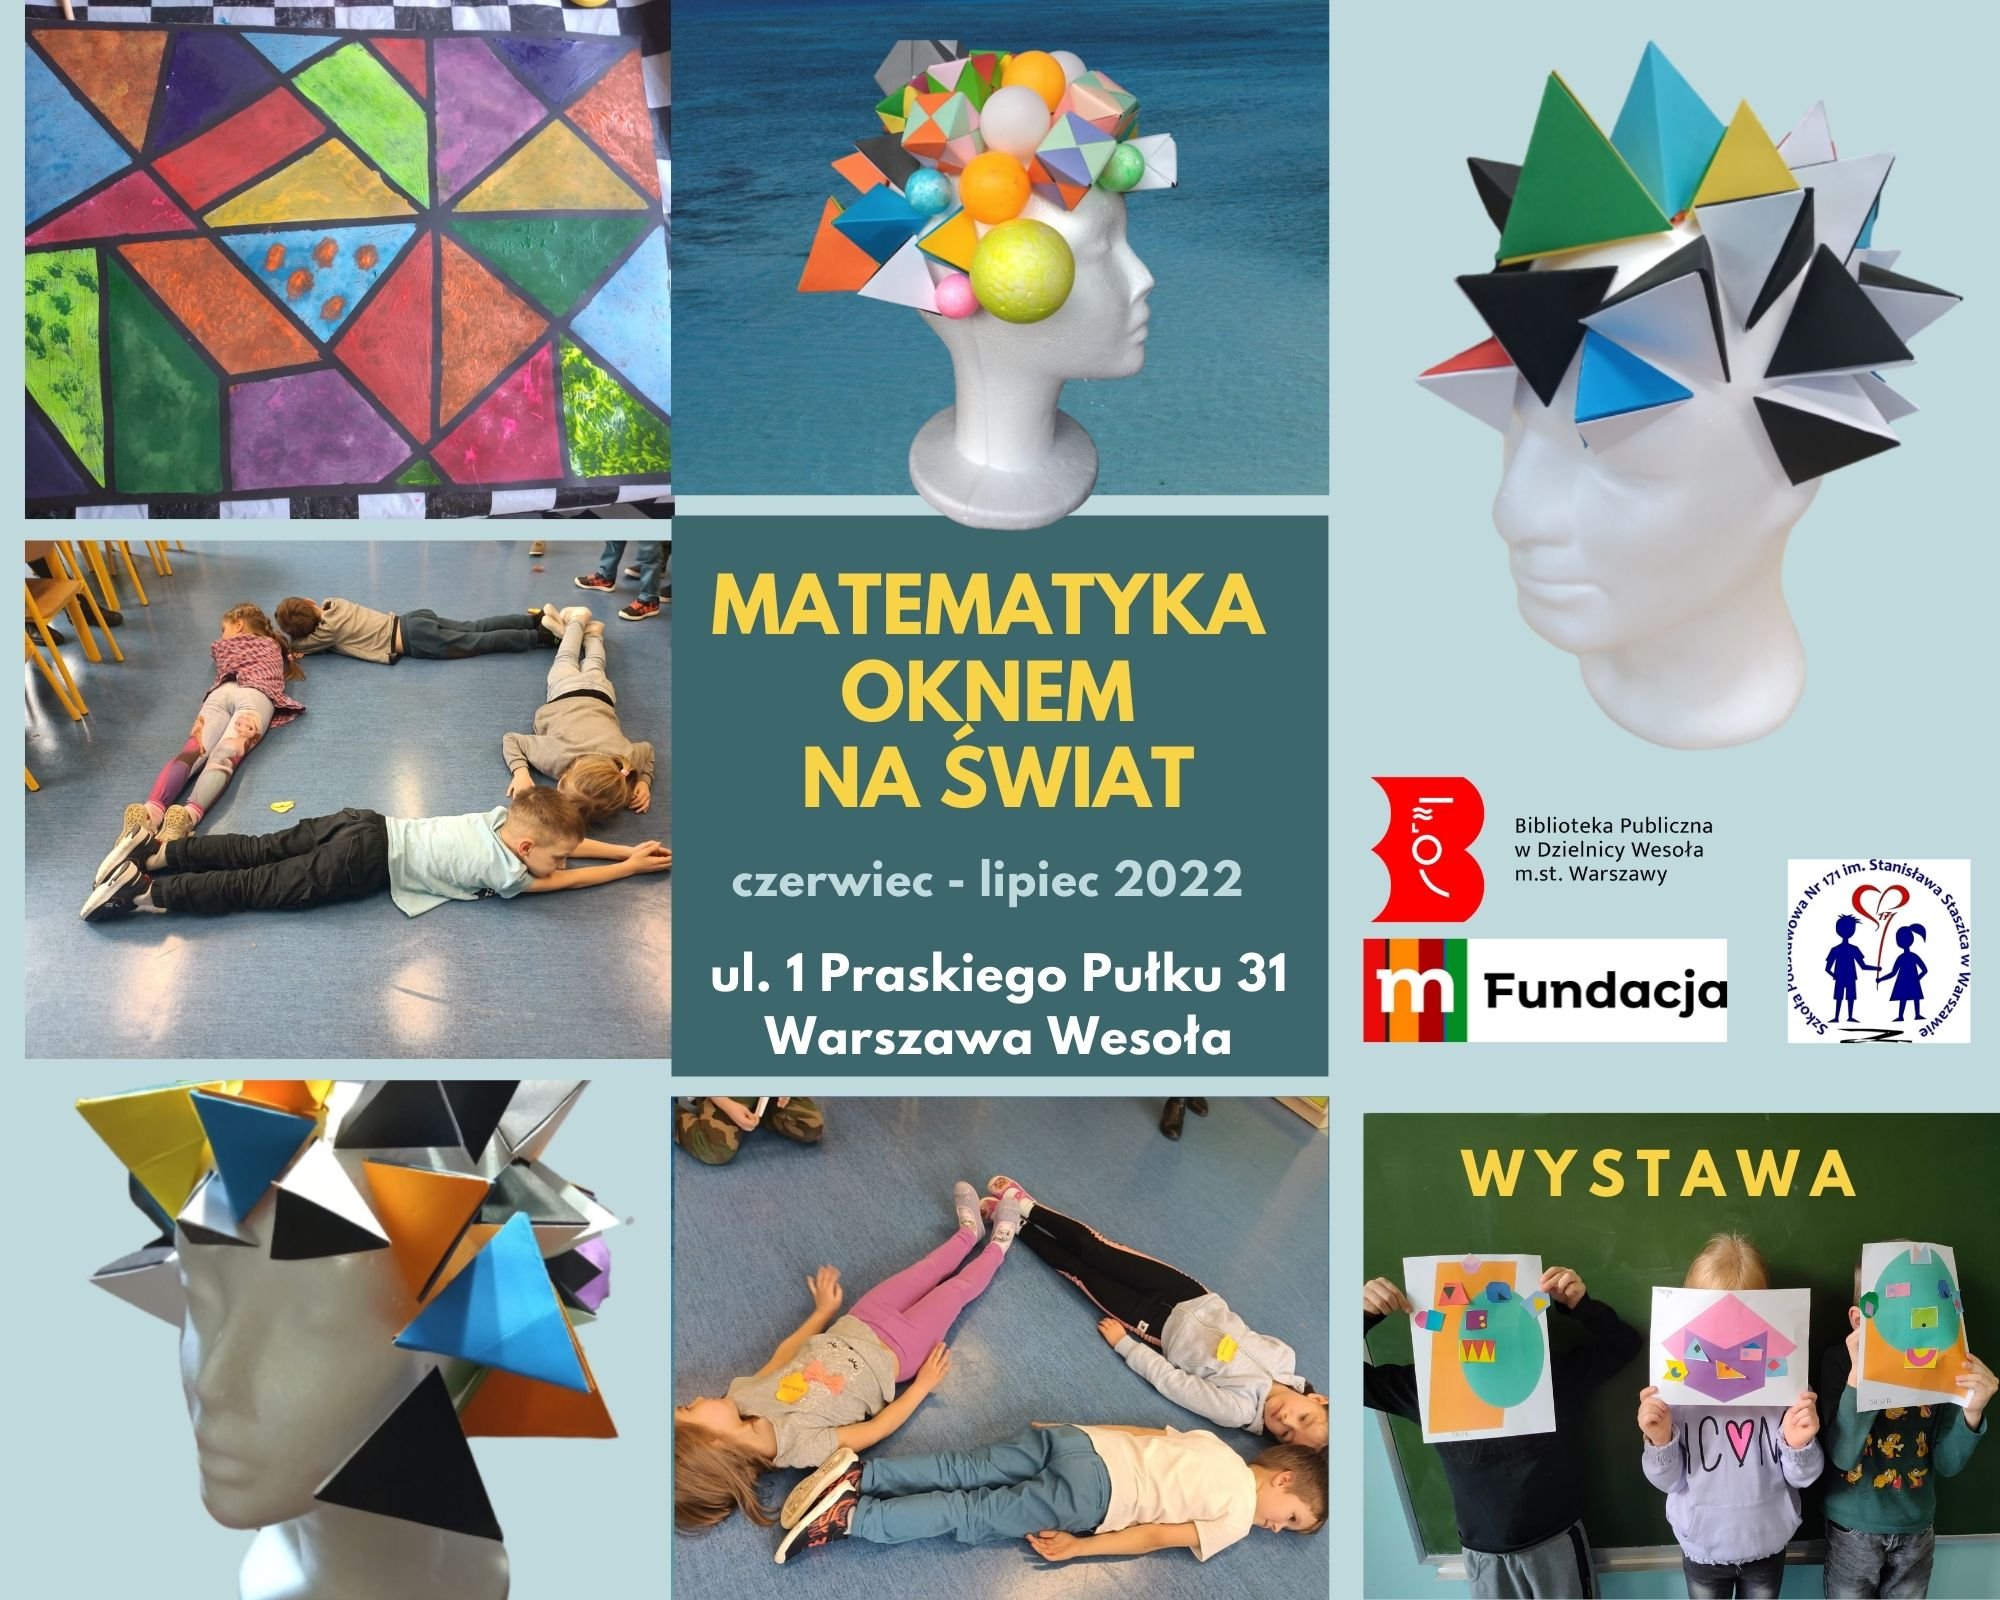 Plakat promujący wystawę "Matematyka - oknem na świat"